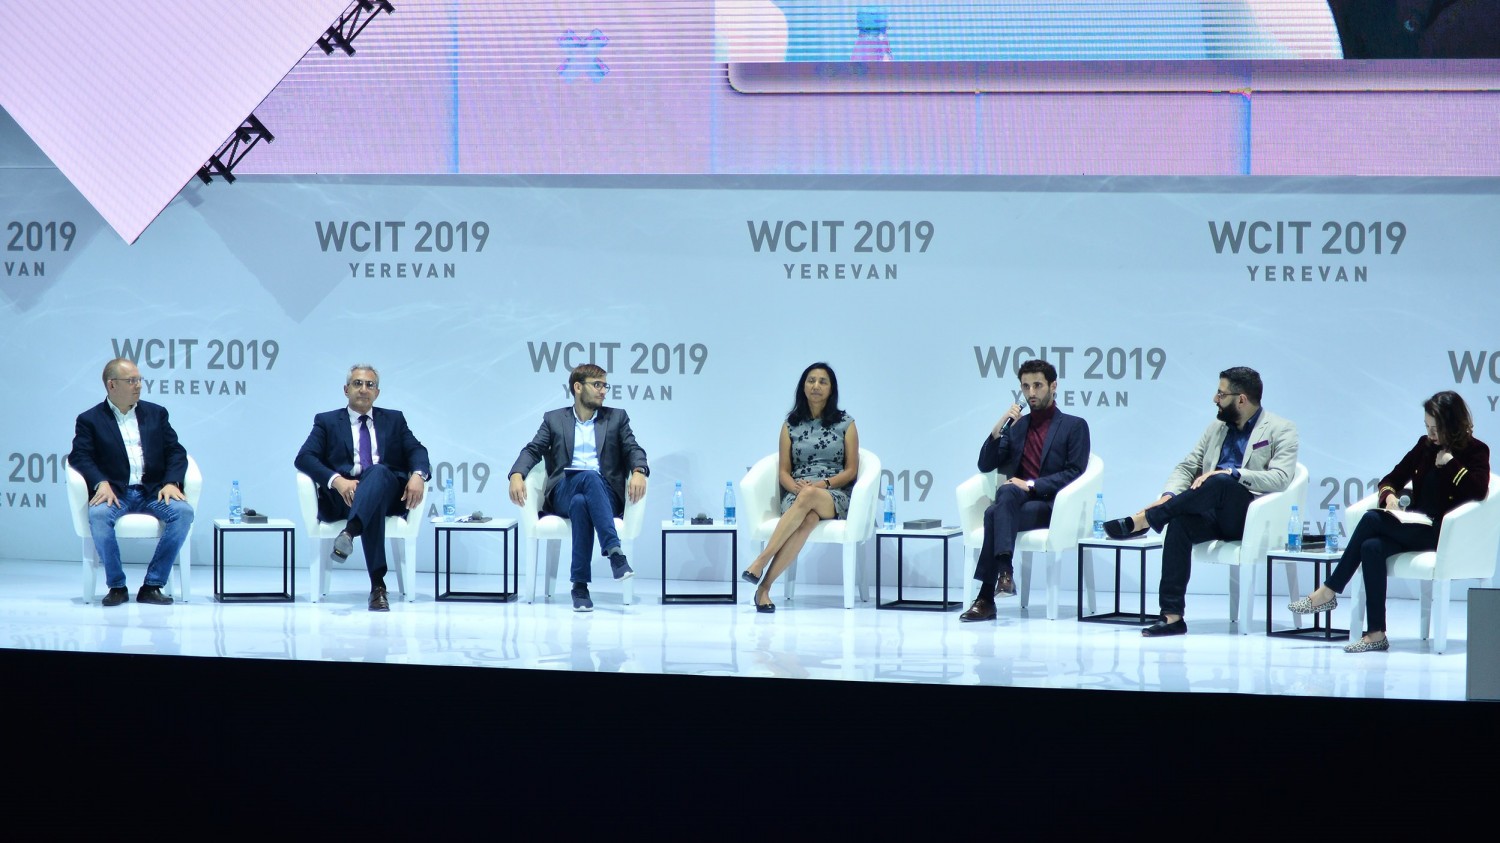 Участники конгресса WCIT-2019 обозначили тренды развития IT-индустрии